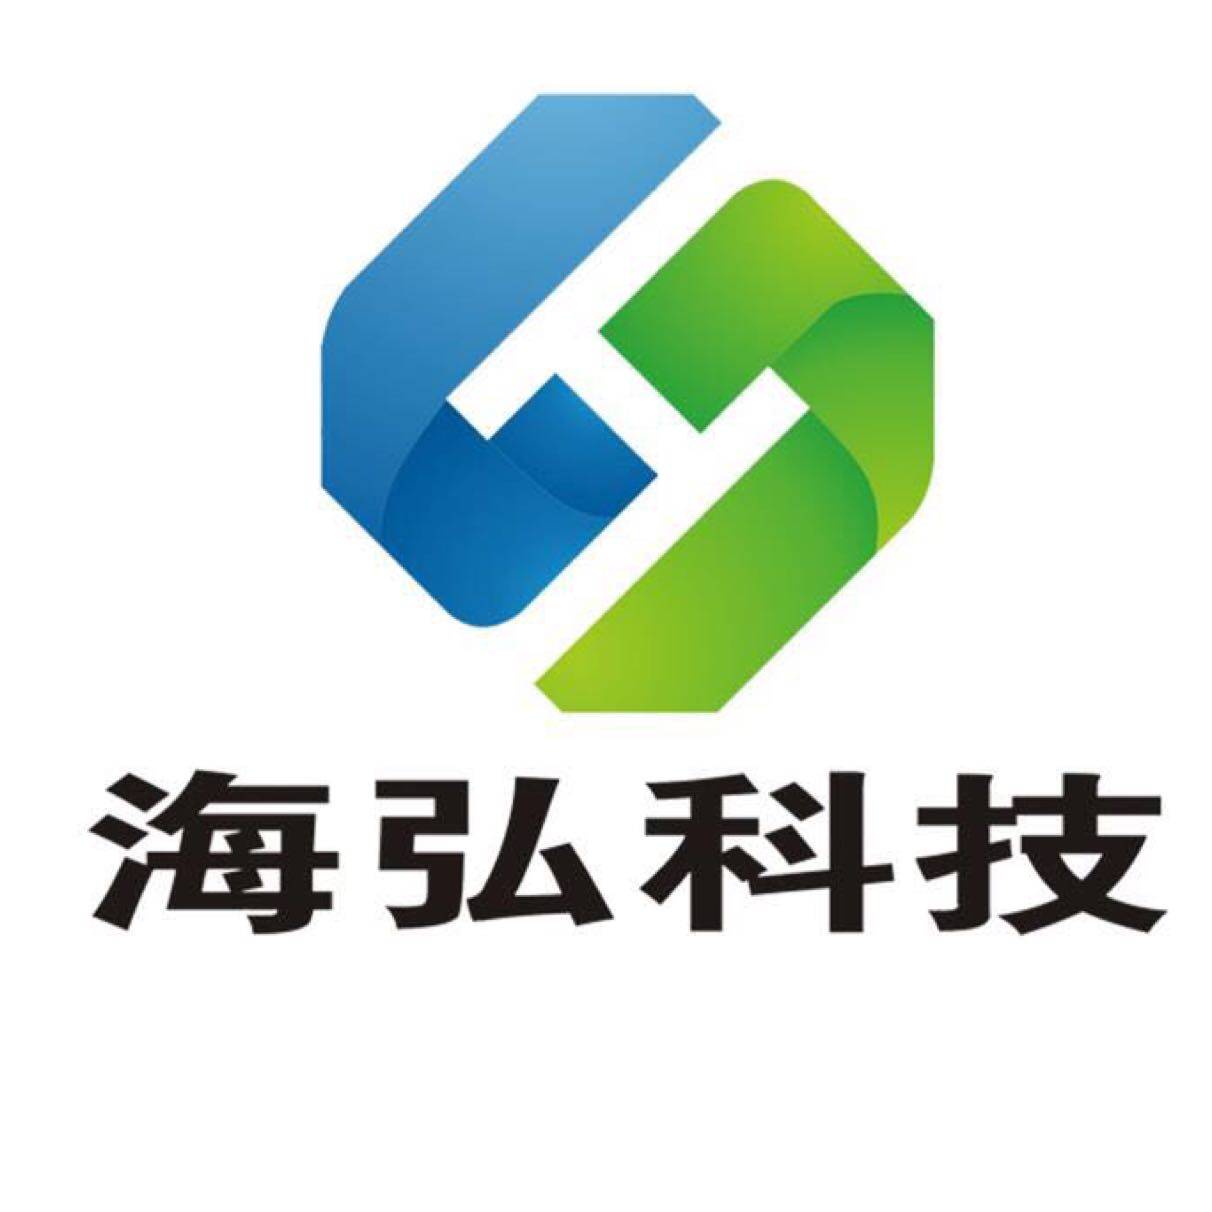 海弘科技招聘logo